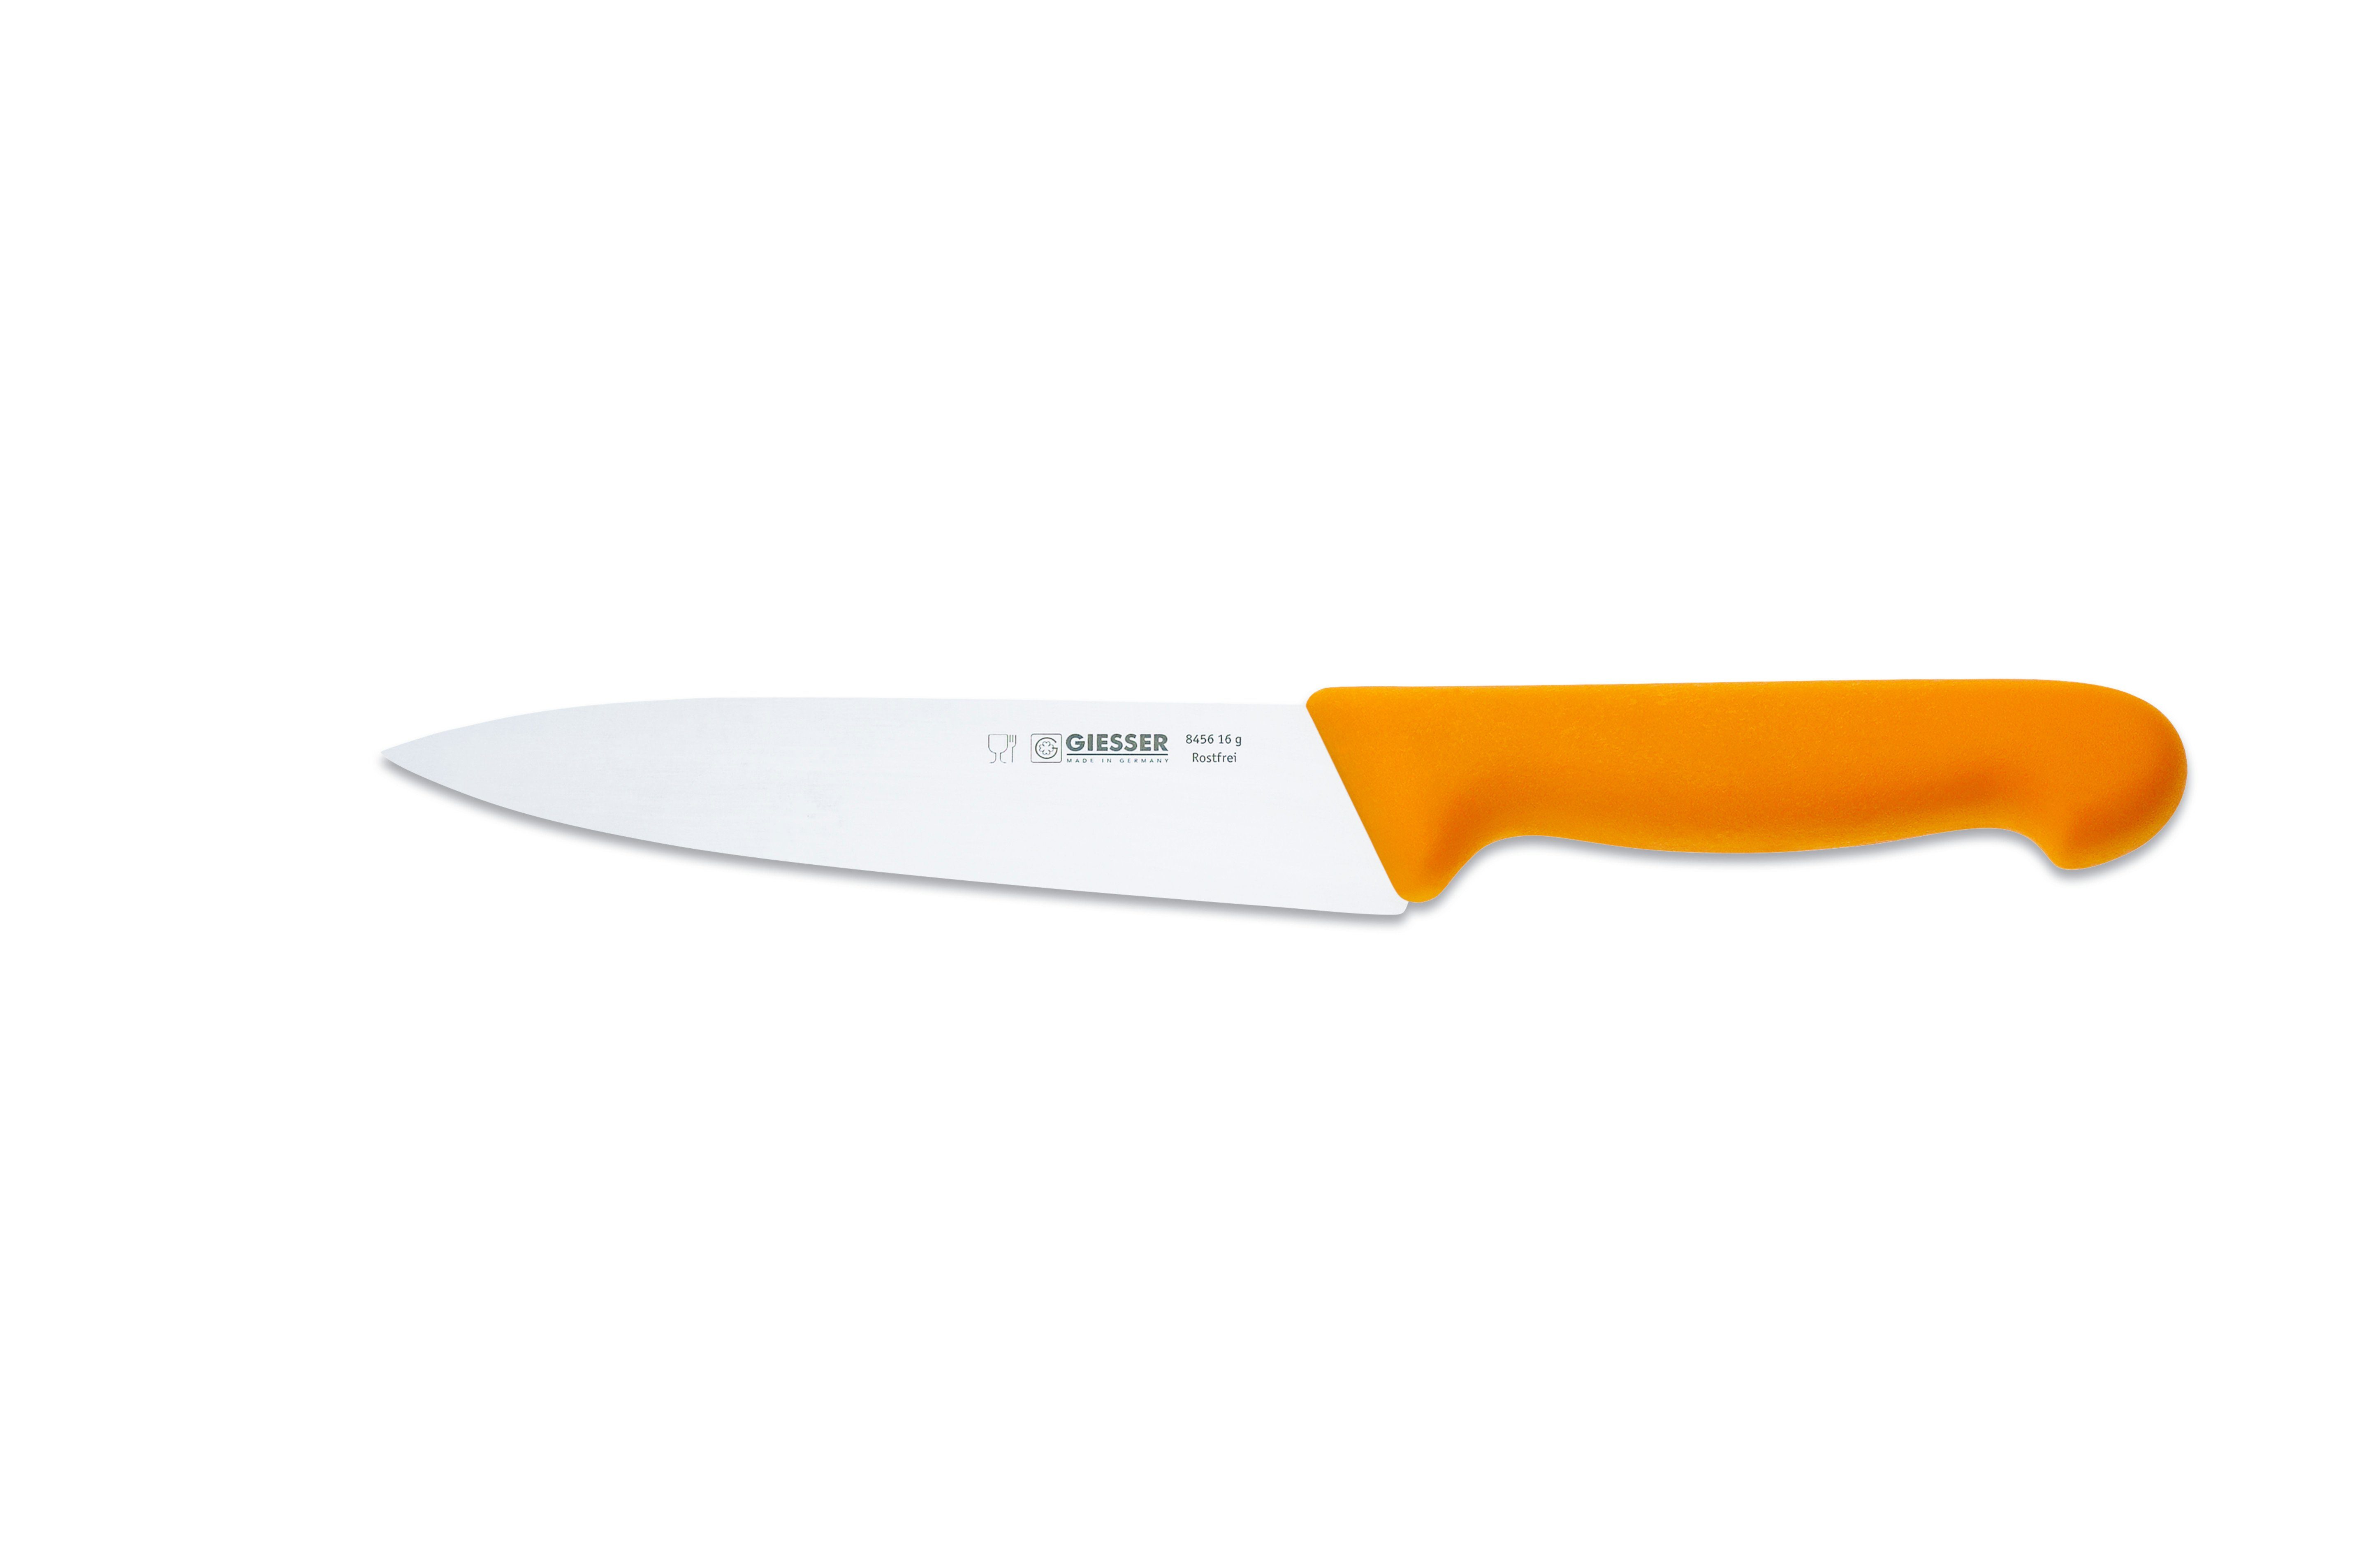 Giesser Messer Kochmesser Küchenmesser 8456, schmale, mittelspitze Klinge, scharf Handabzug, Ideal für jede Küche gelb